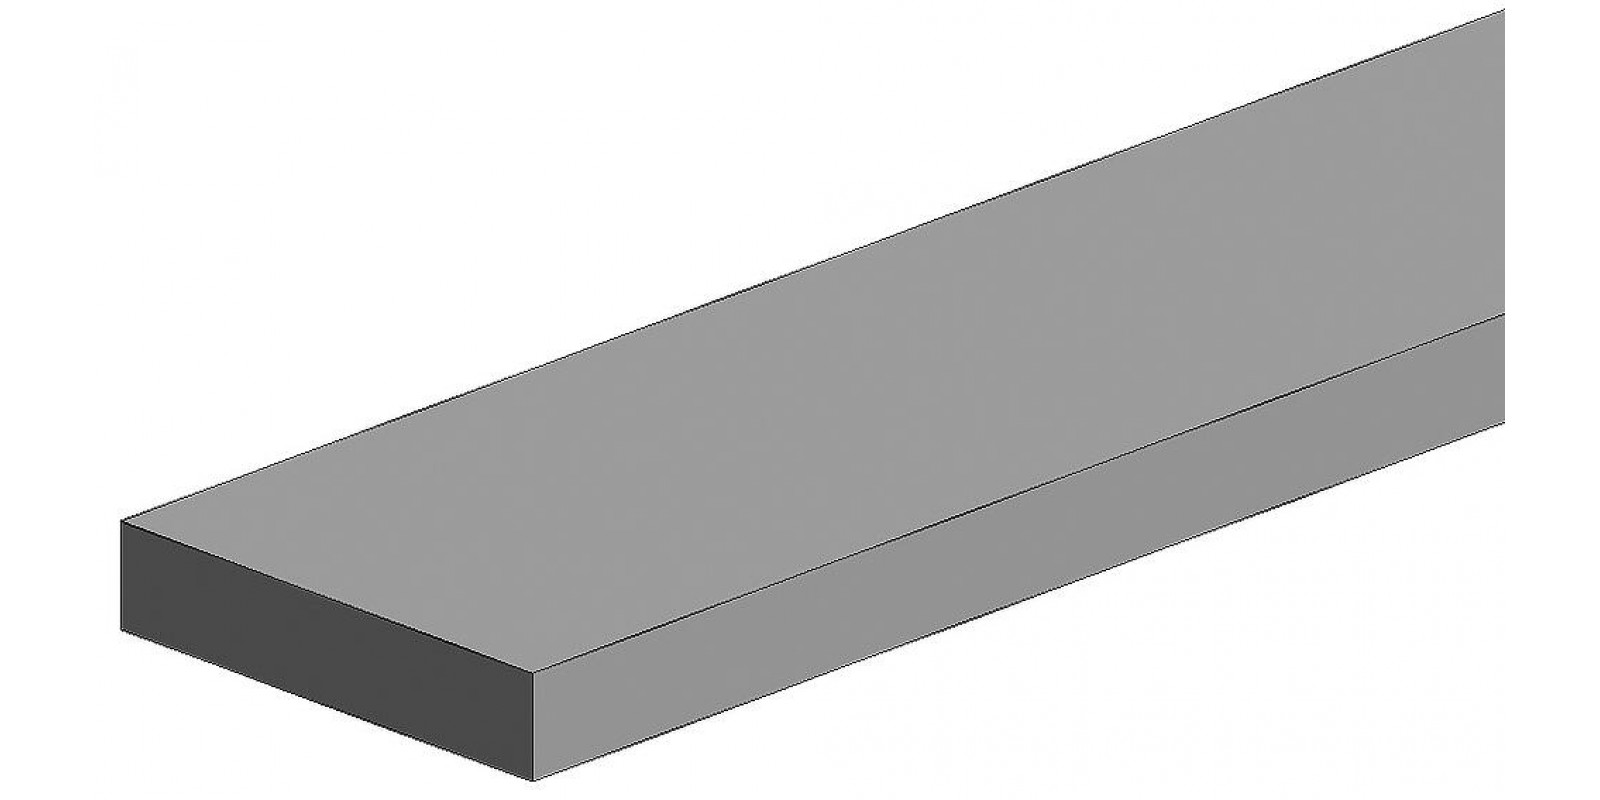 FA500101 White polystyrene square profile